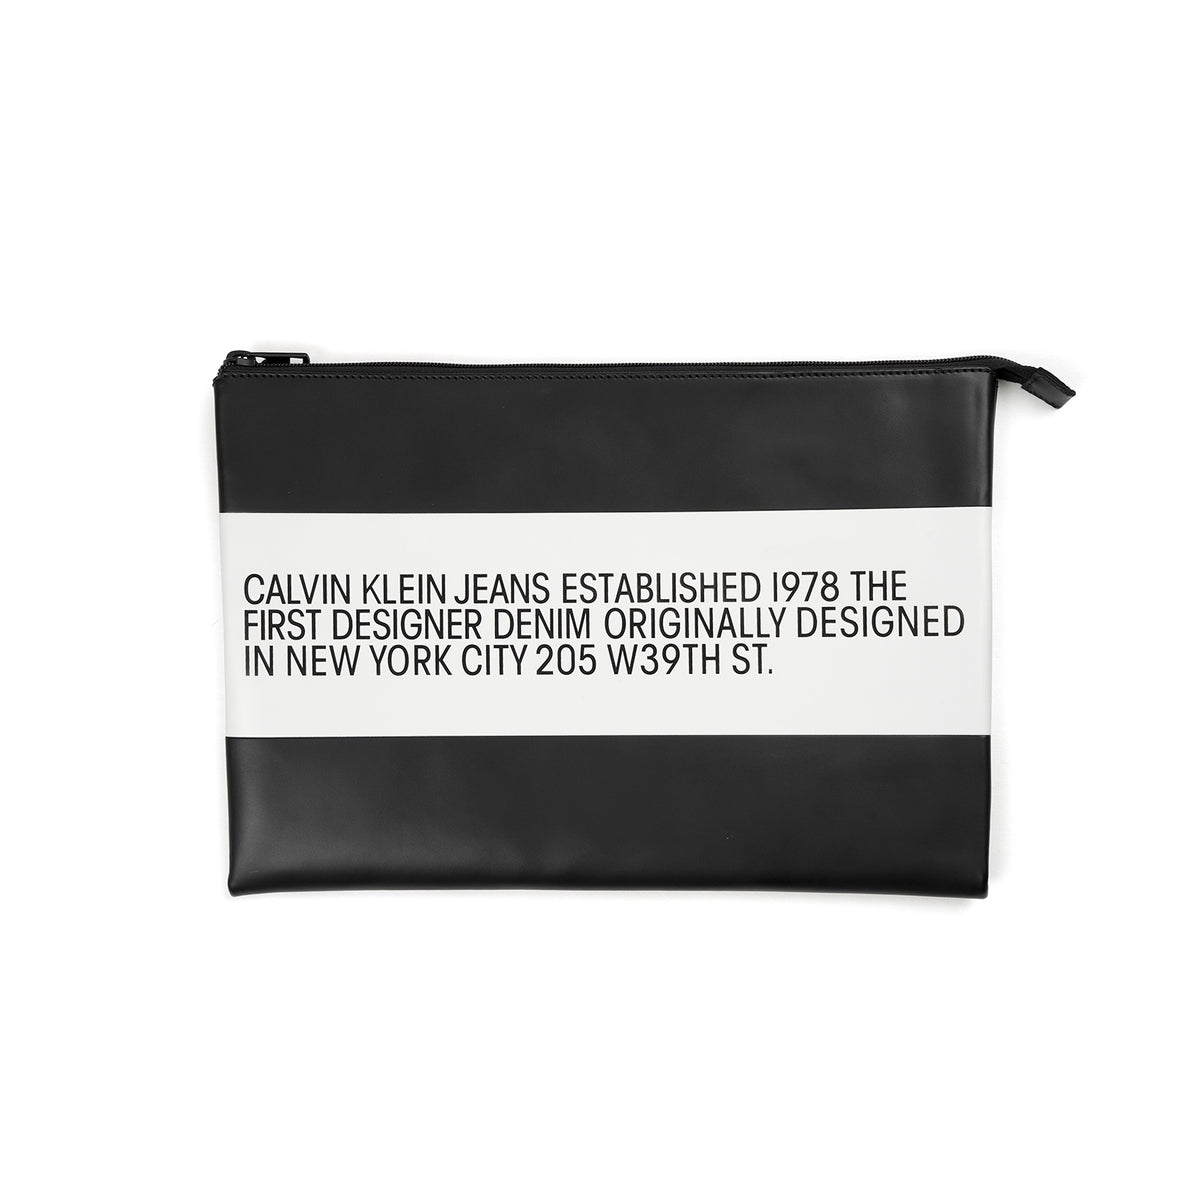 Calvin Klein Jeans Est. 1978 | Leather Pouch Black - Concrete